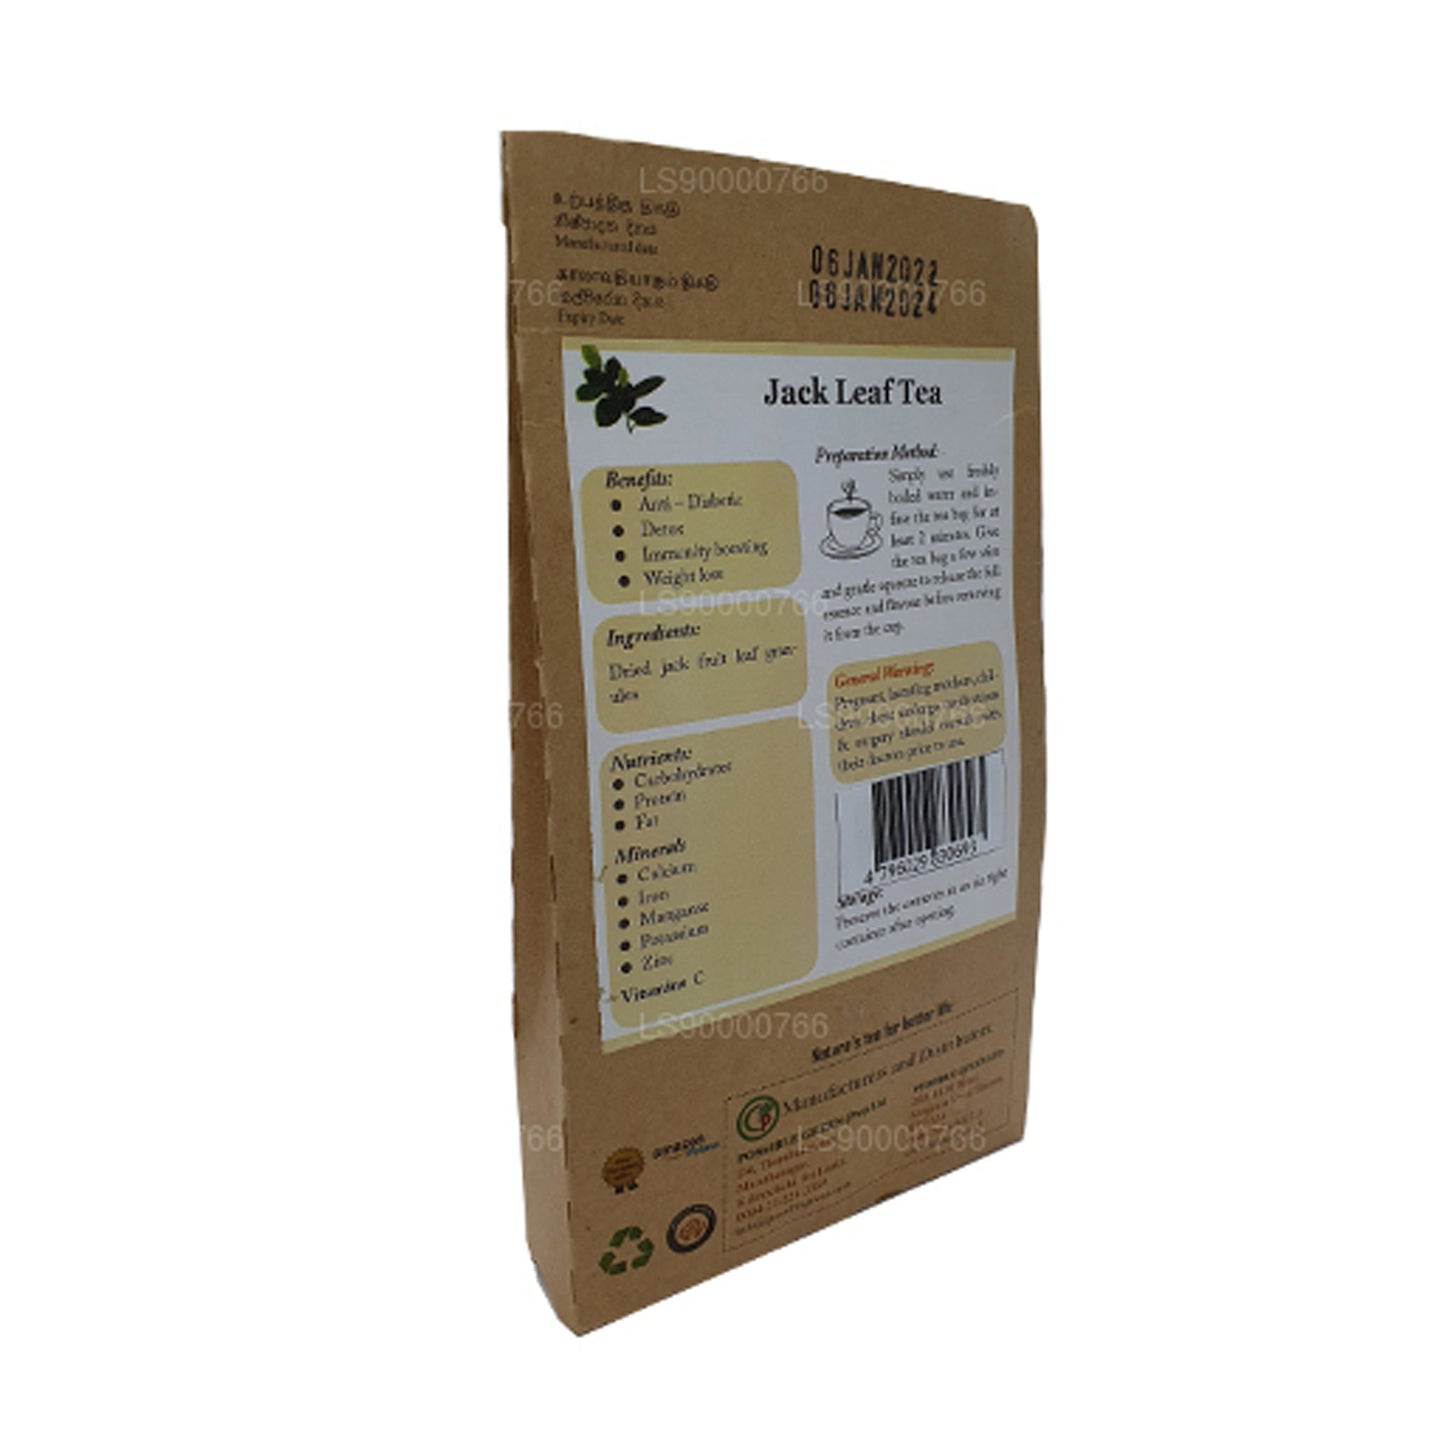 Lifetone Jackfruit Leaf Tea (40g)